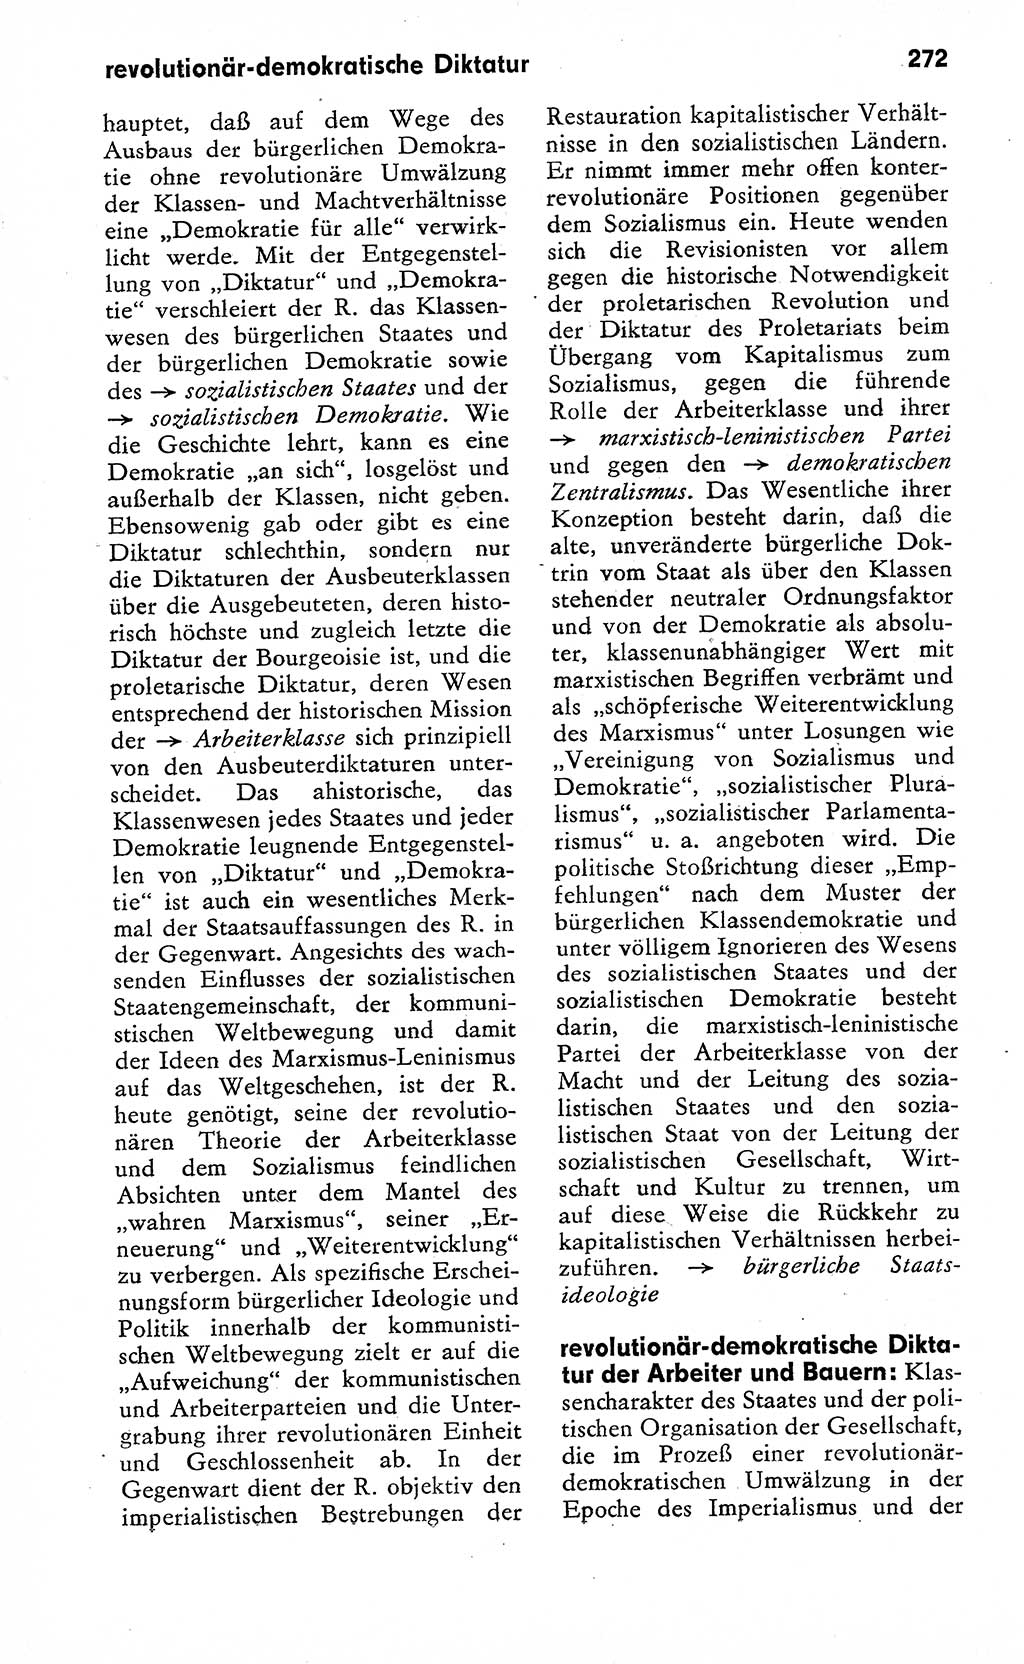 Wörterbuch zum sozialistischen Staat [Deutsche Demokratische Republik (DDR)] 1974, Seite 272 (Wb. soz. St. DDR 1974, S. 272)